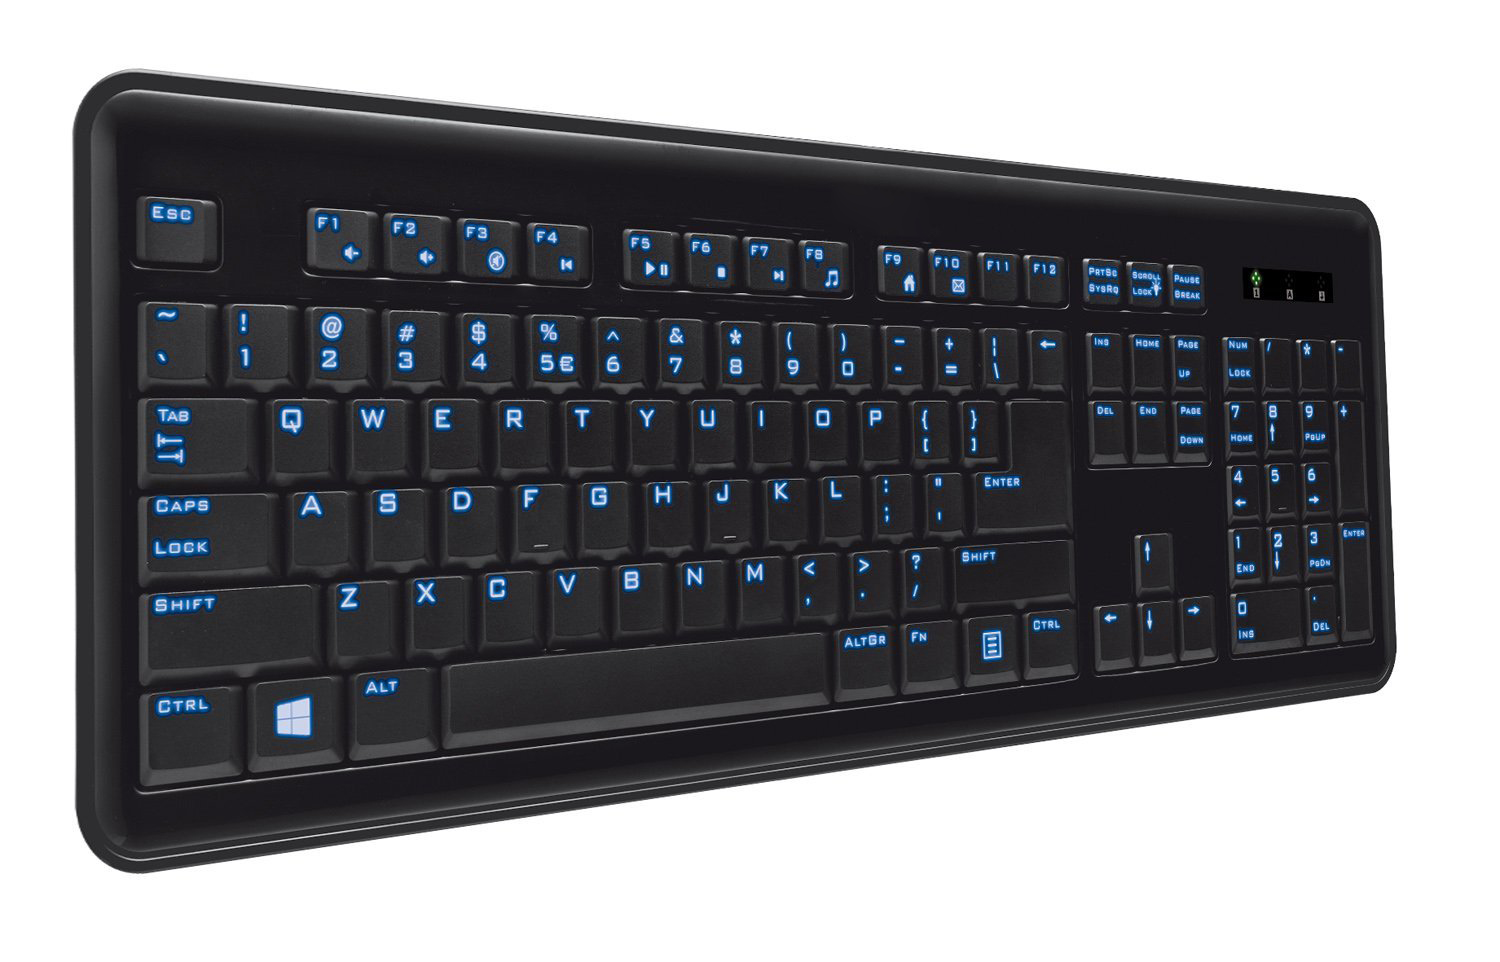 LED Illuminated Keyboard